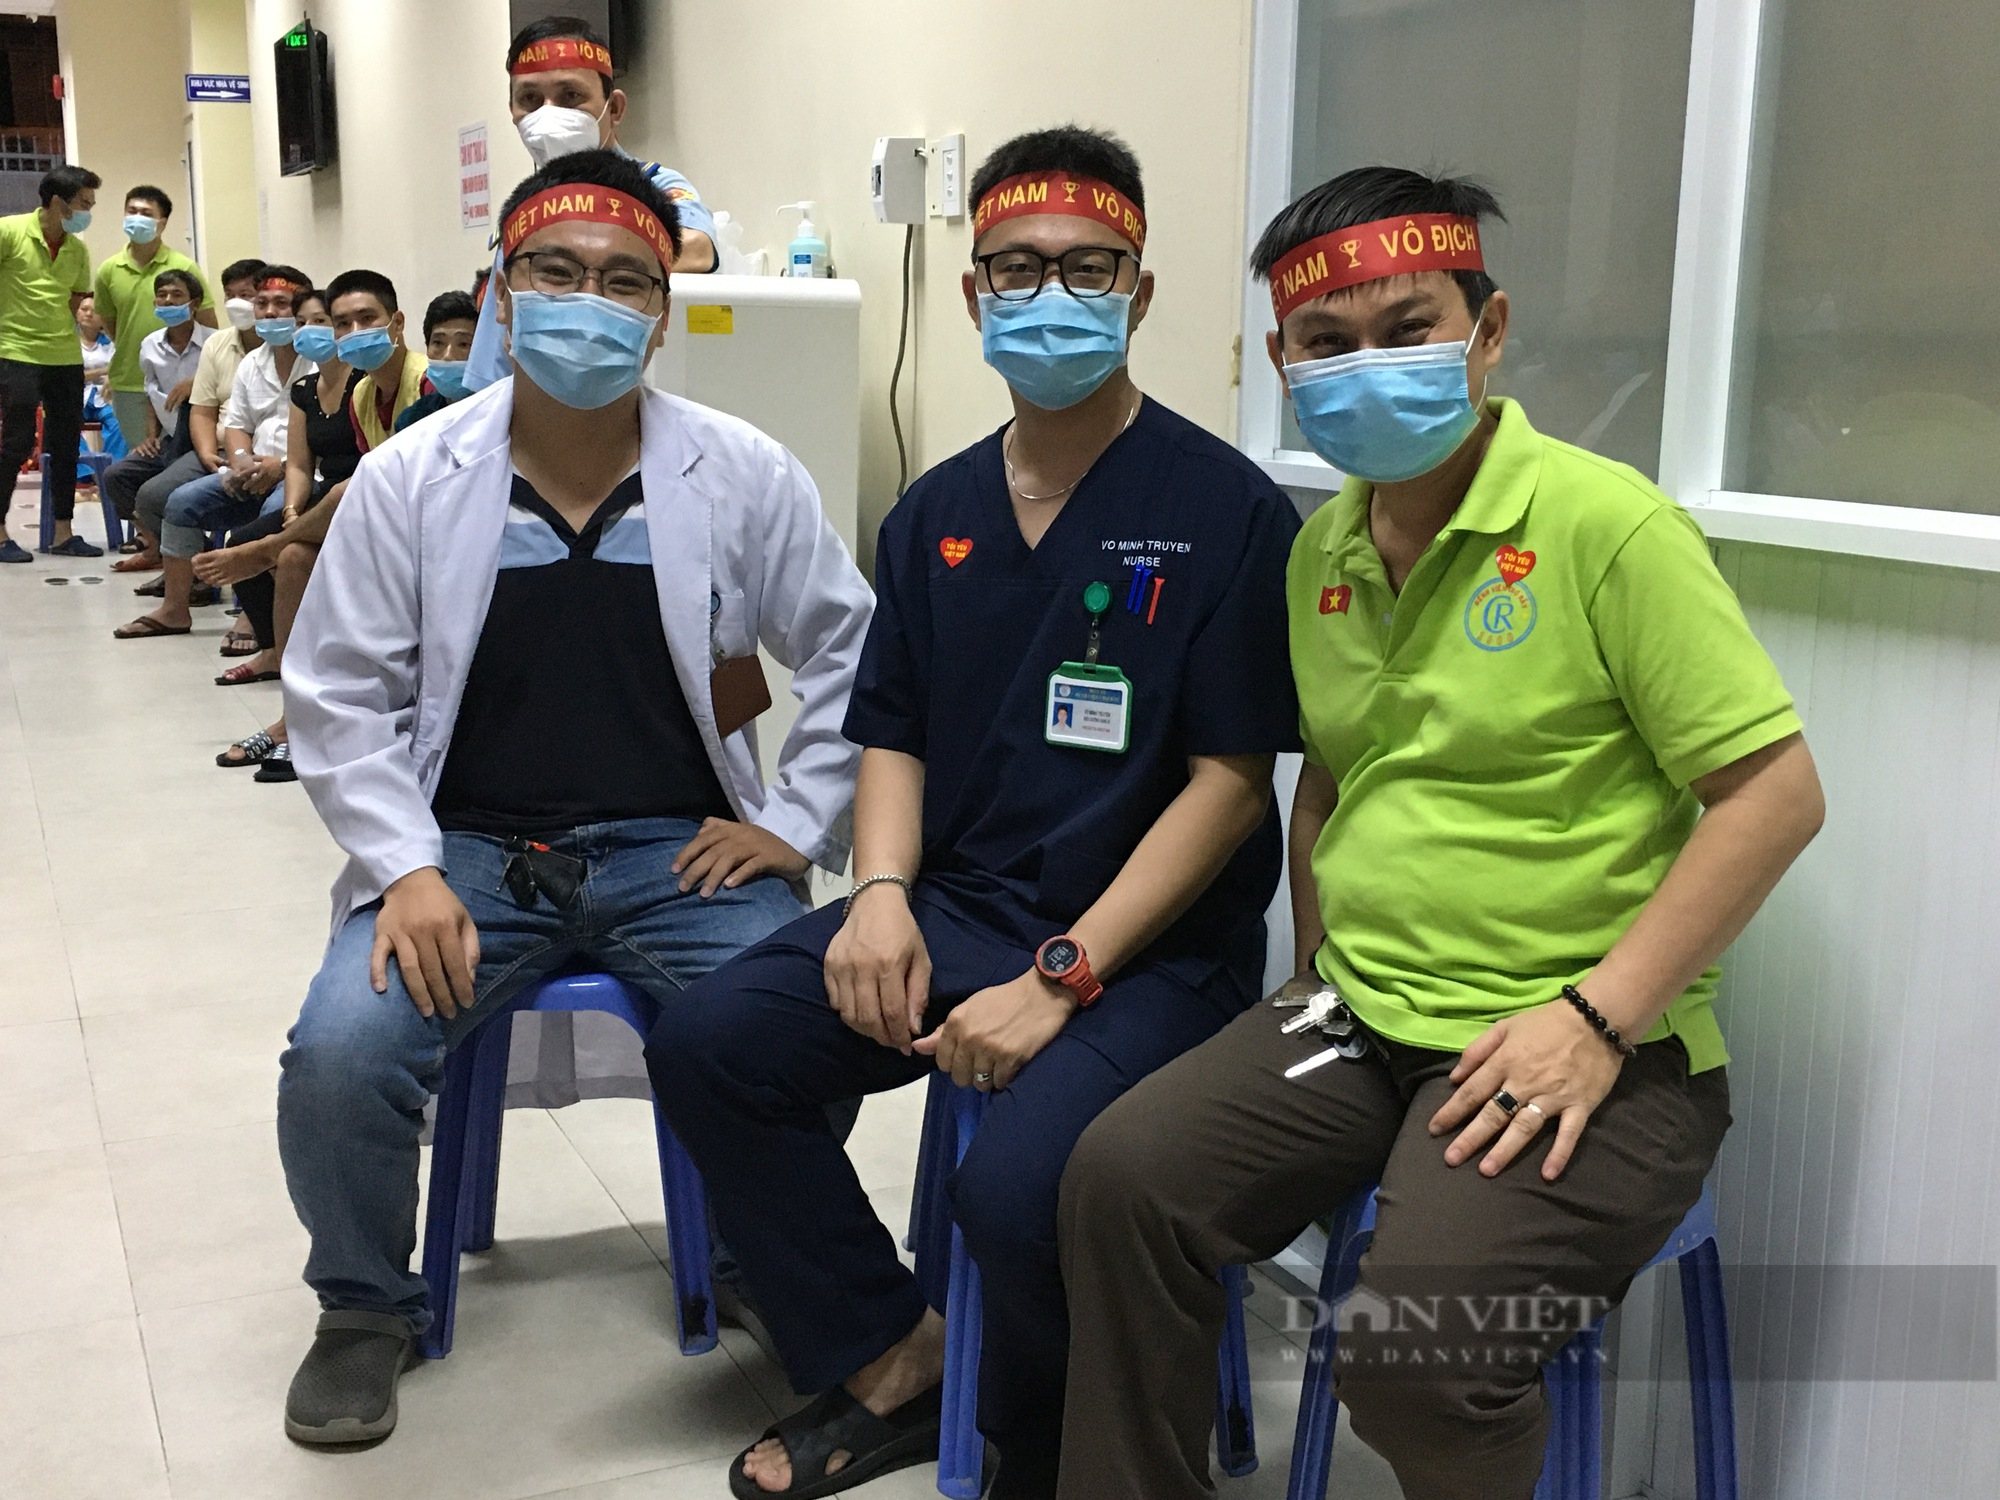 Bỏ qua cơn đau bệnh tật, bệnh nhân vỡ oà niềm vui chiến thắng với U23 Việt Nam - Ảnh 9.